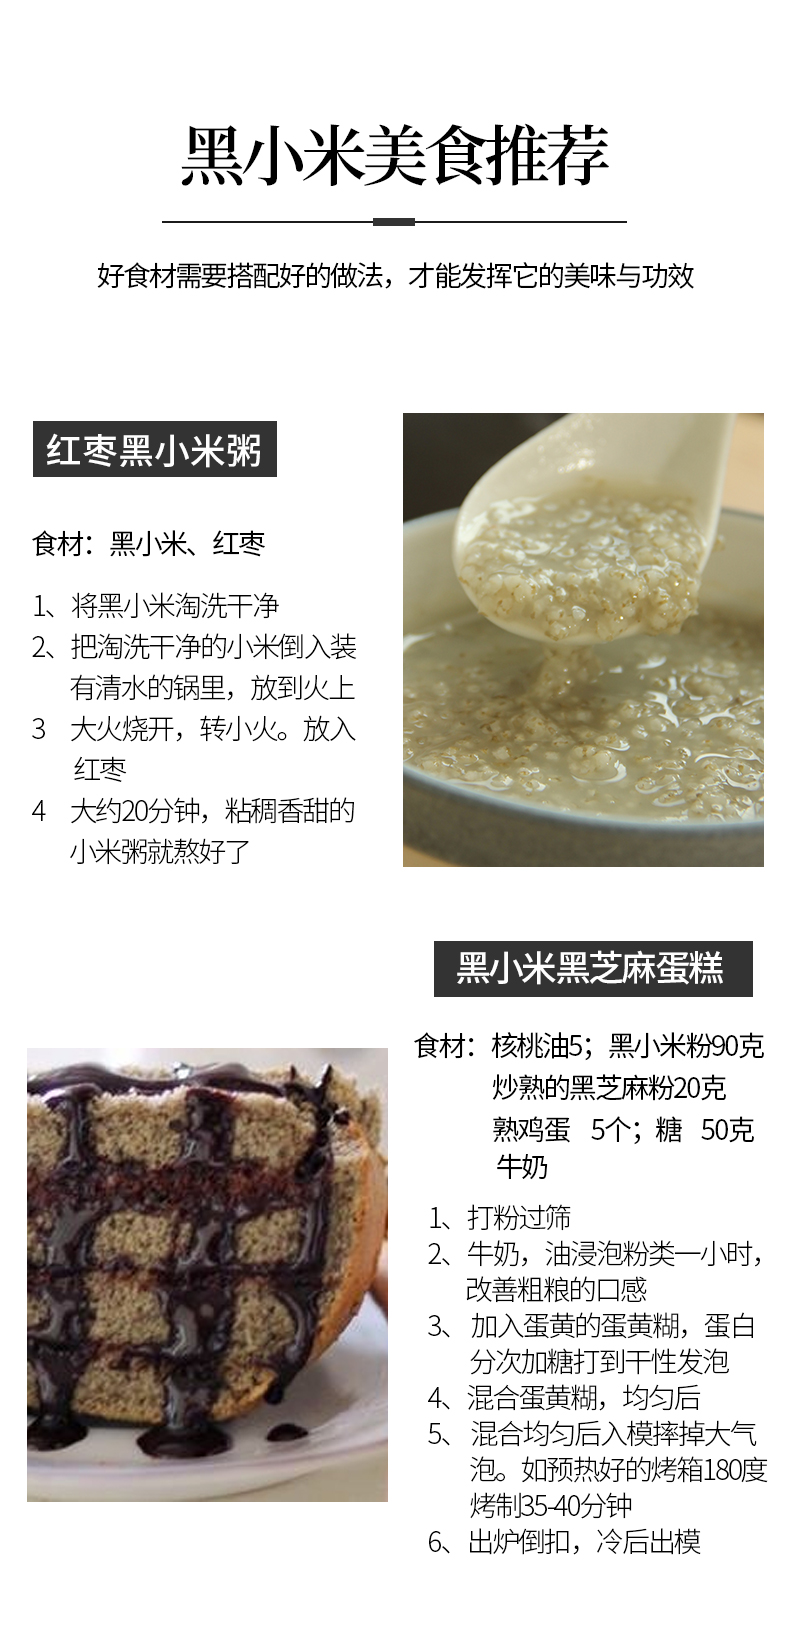 【半价】米脂黑小米2020年新米陕北农家小米粥杂粮搭配500g*2